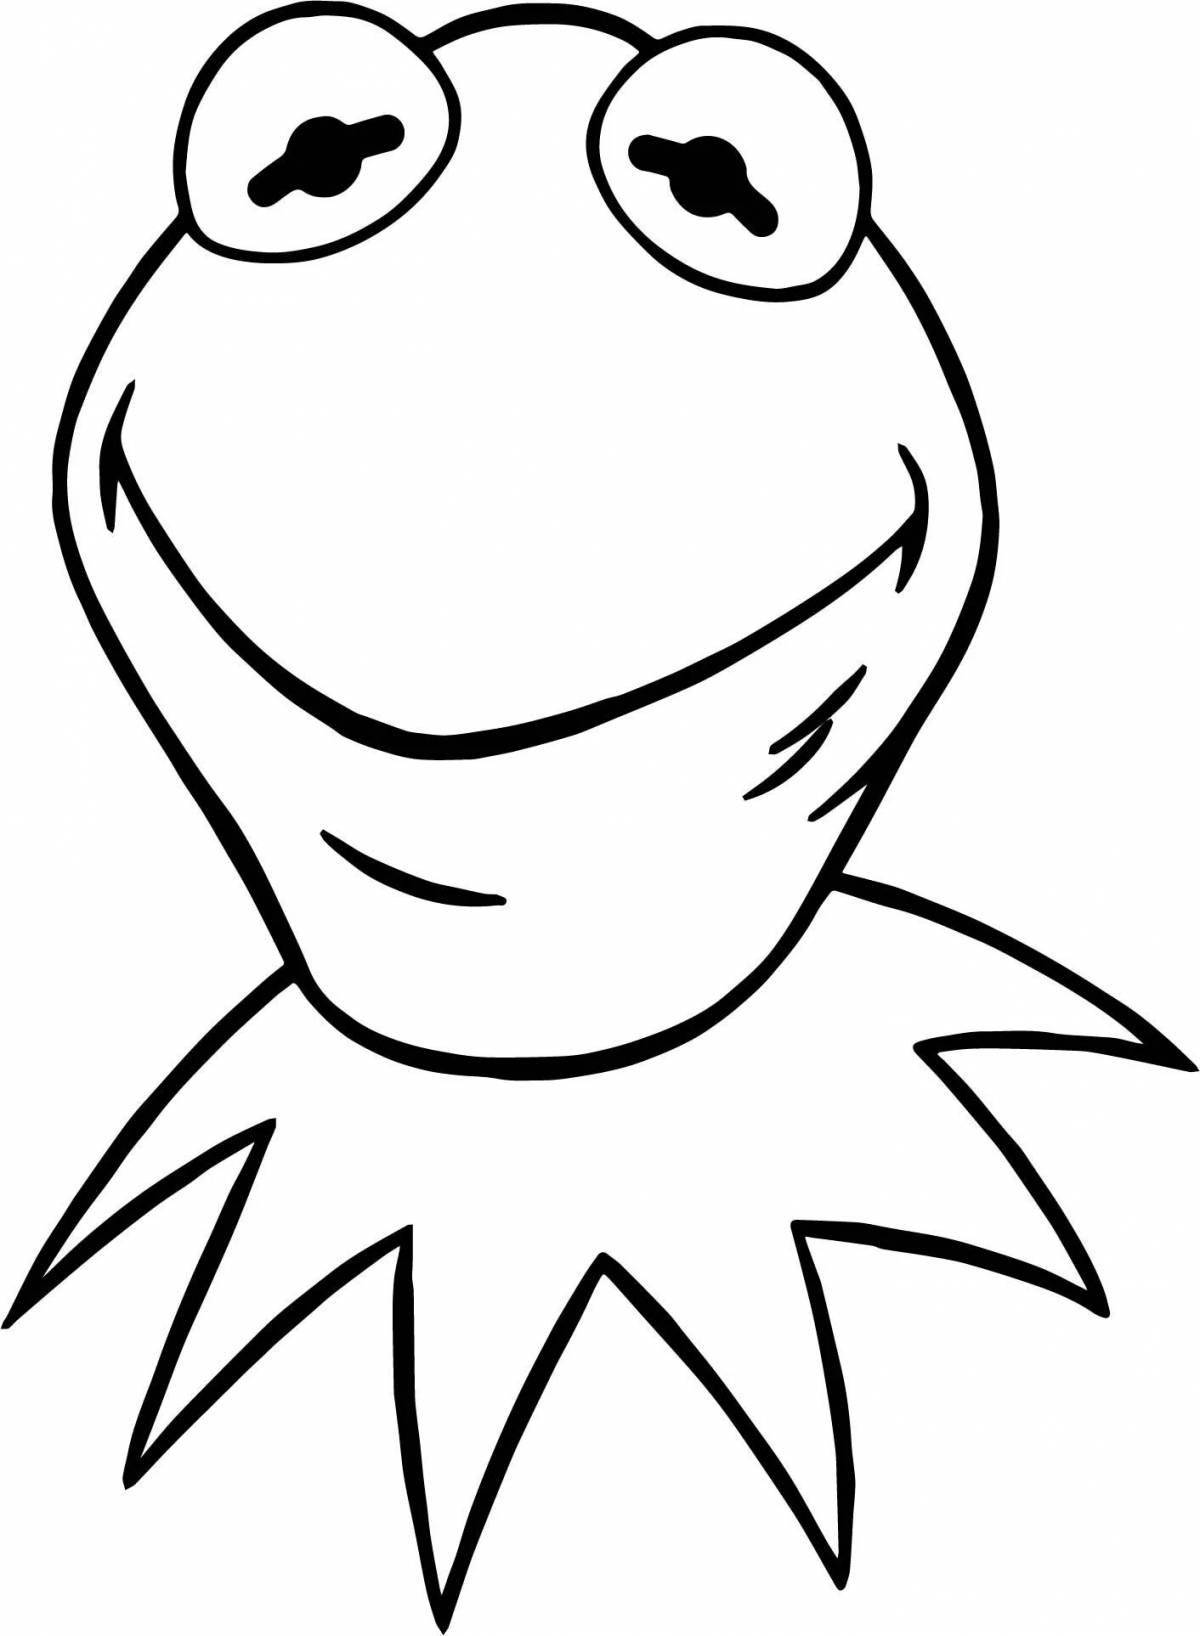 Coloring energetic frog meme